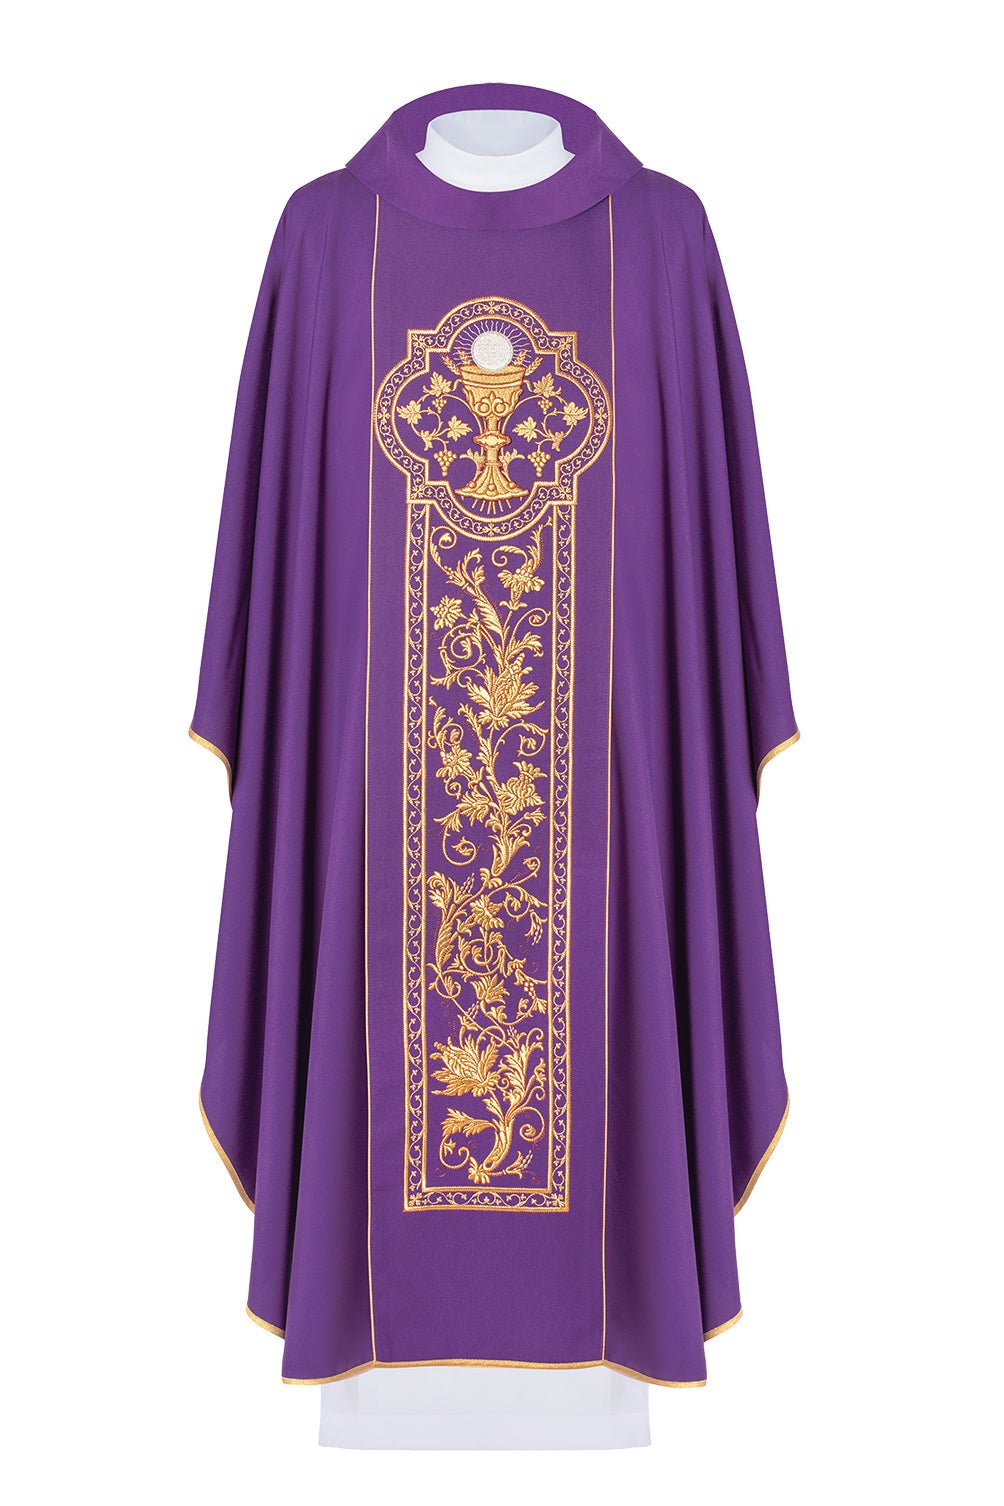 Fioletowy ornat z symbolem kielicha eucharystycznego